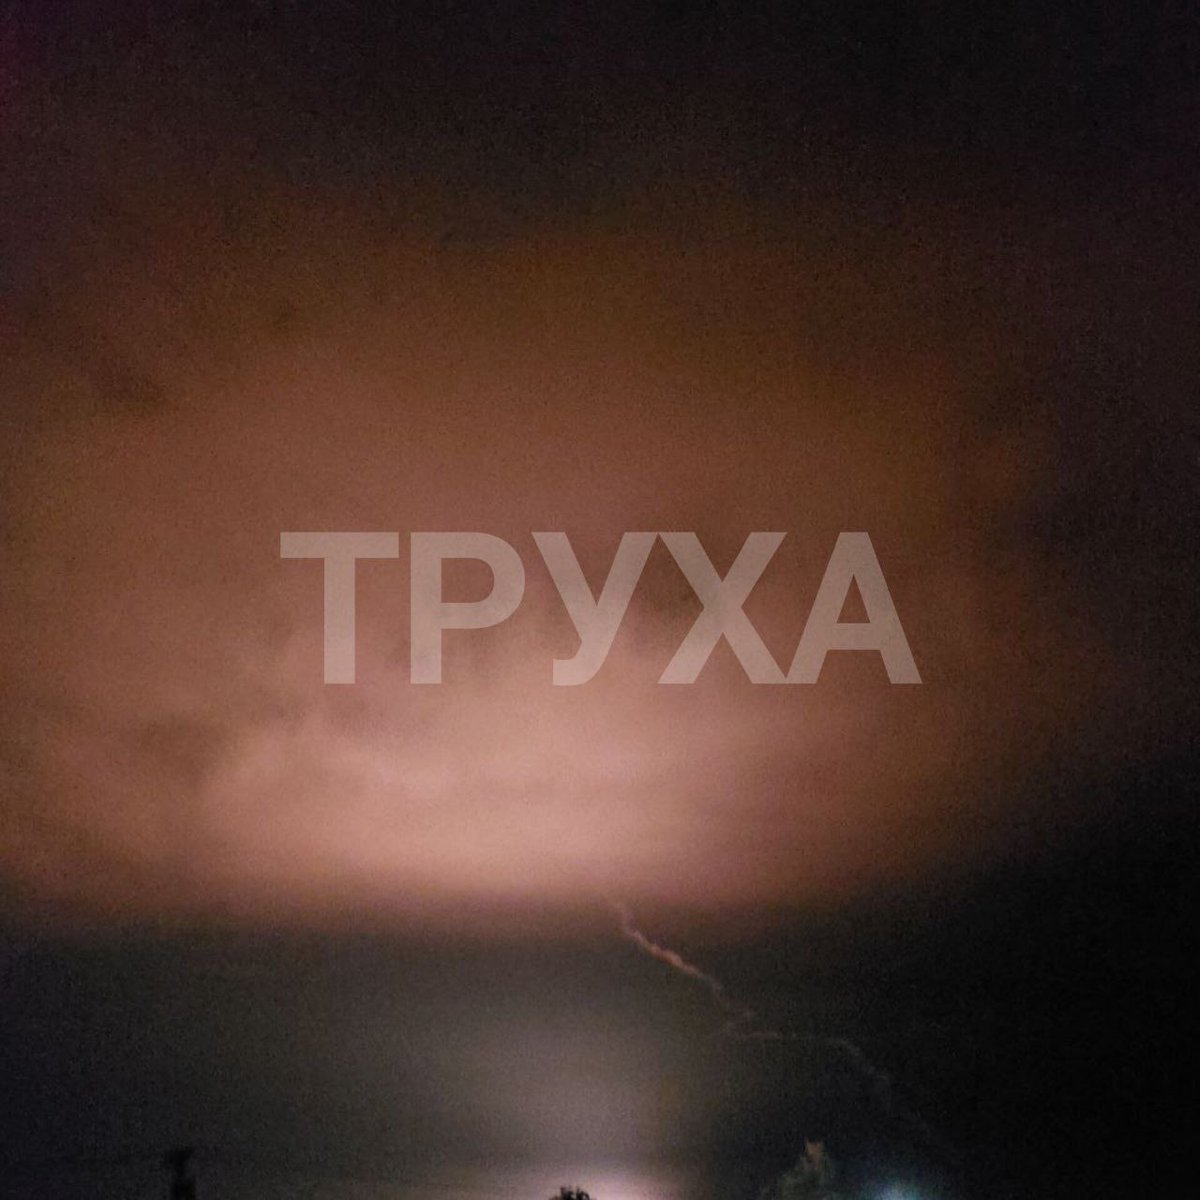 JETZT— Mehrere Raketen Einschläge 💥💥💥werden in der Nähe des 🇷🇺 Militär-Flugplatzes in Dzhankoy auf der #Krim gemeldet.

#Crimea #CrimeaIsUkraine 🇺🇦